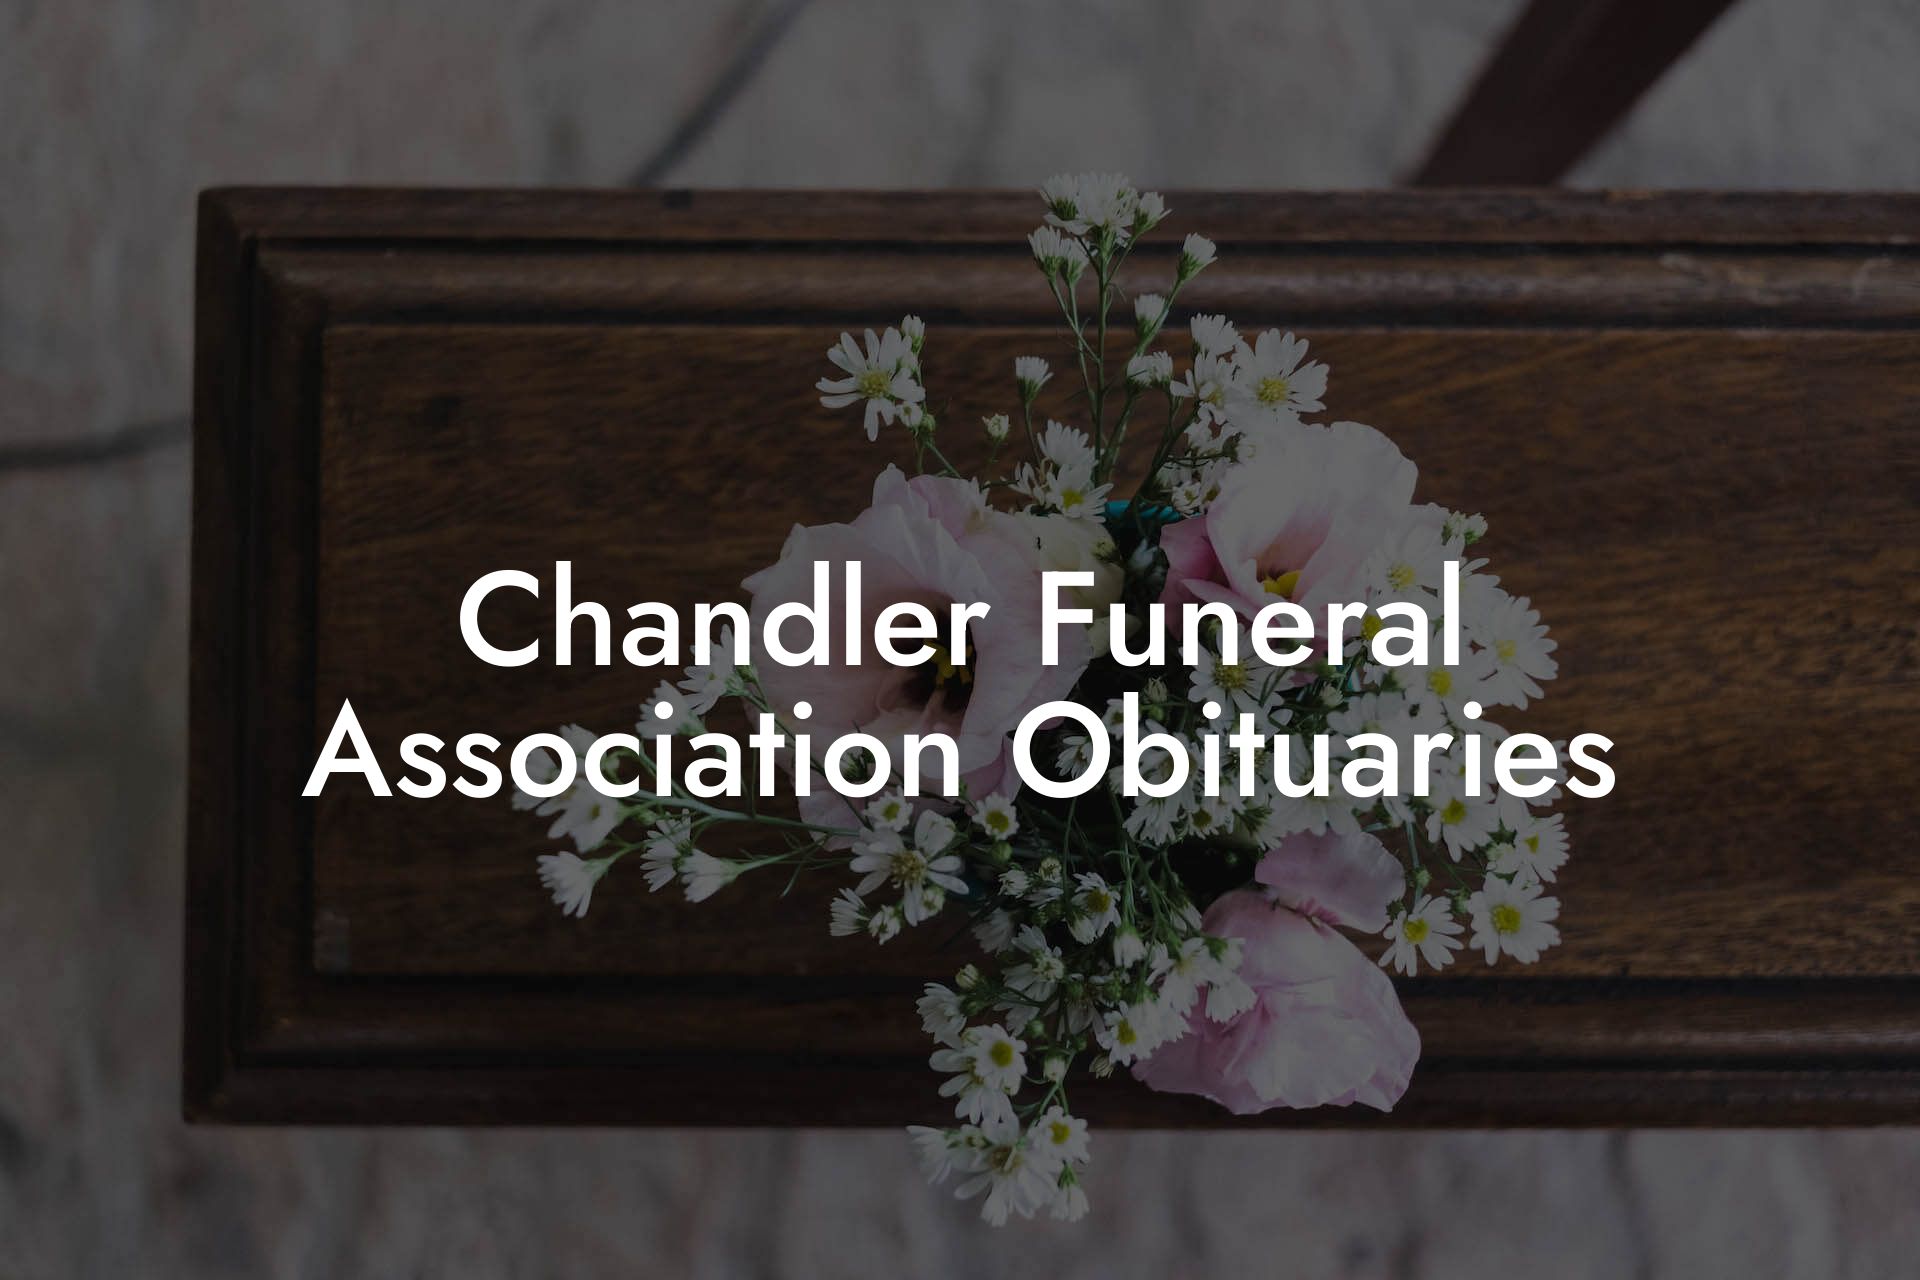 Chandler Funeral Association Obituaries